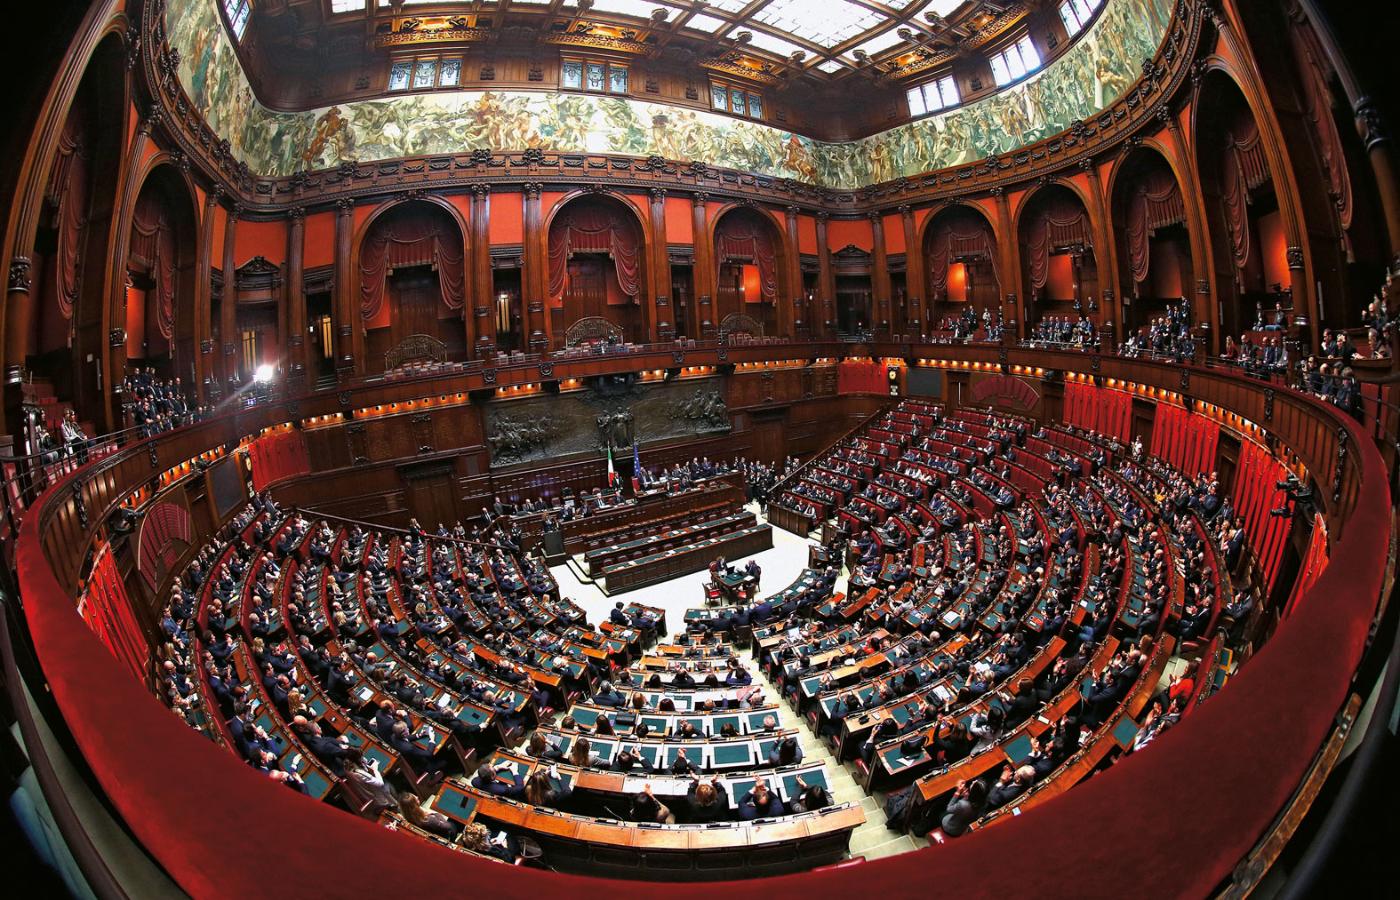 Sala obrad Izby Deputowanych w Pałacu Montecitorio – elektorzy głosują tam na prezydenta.